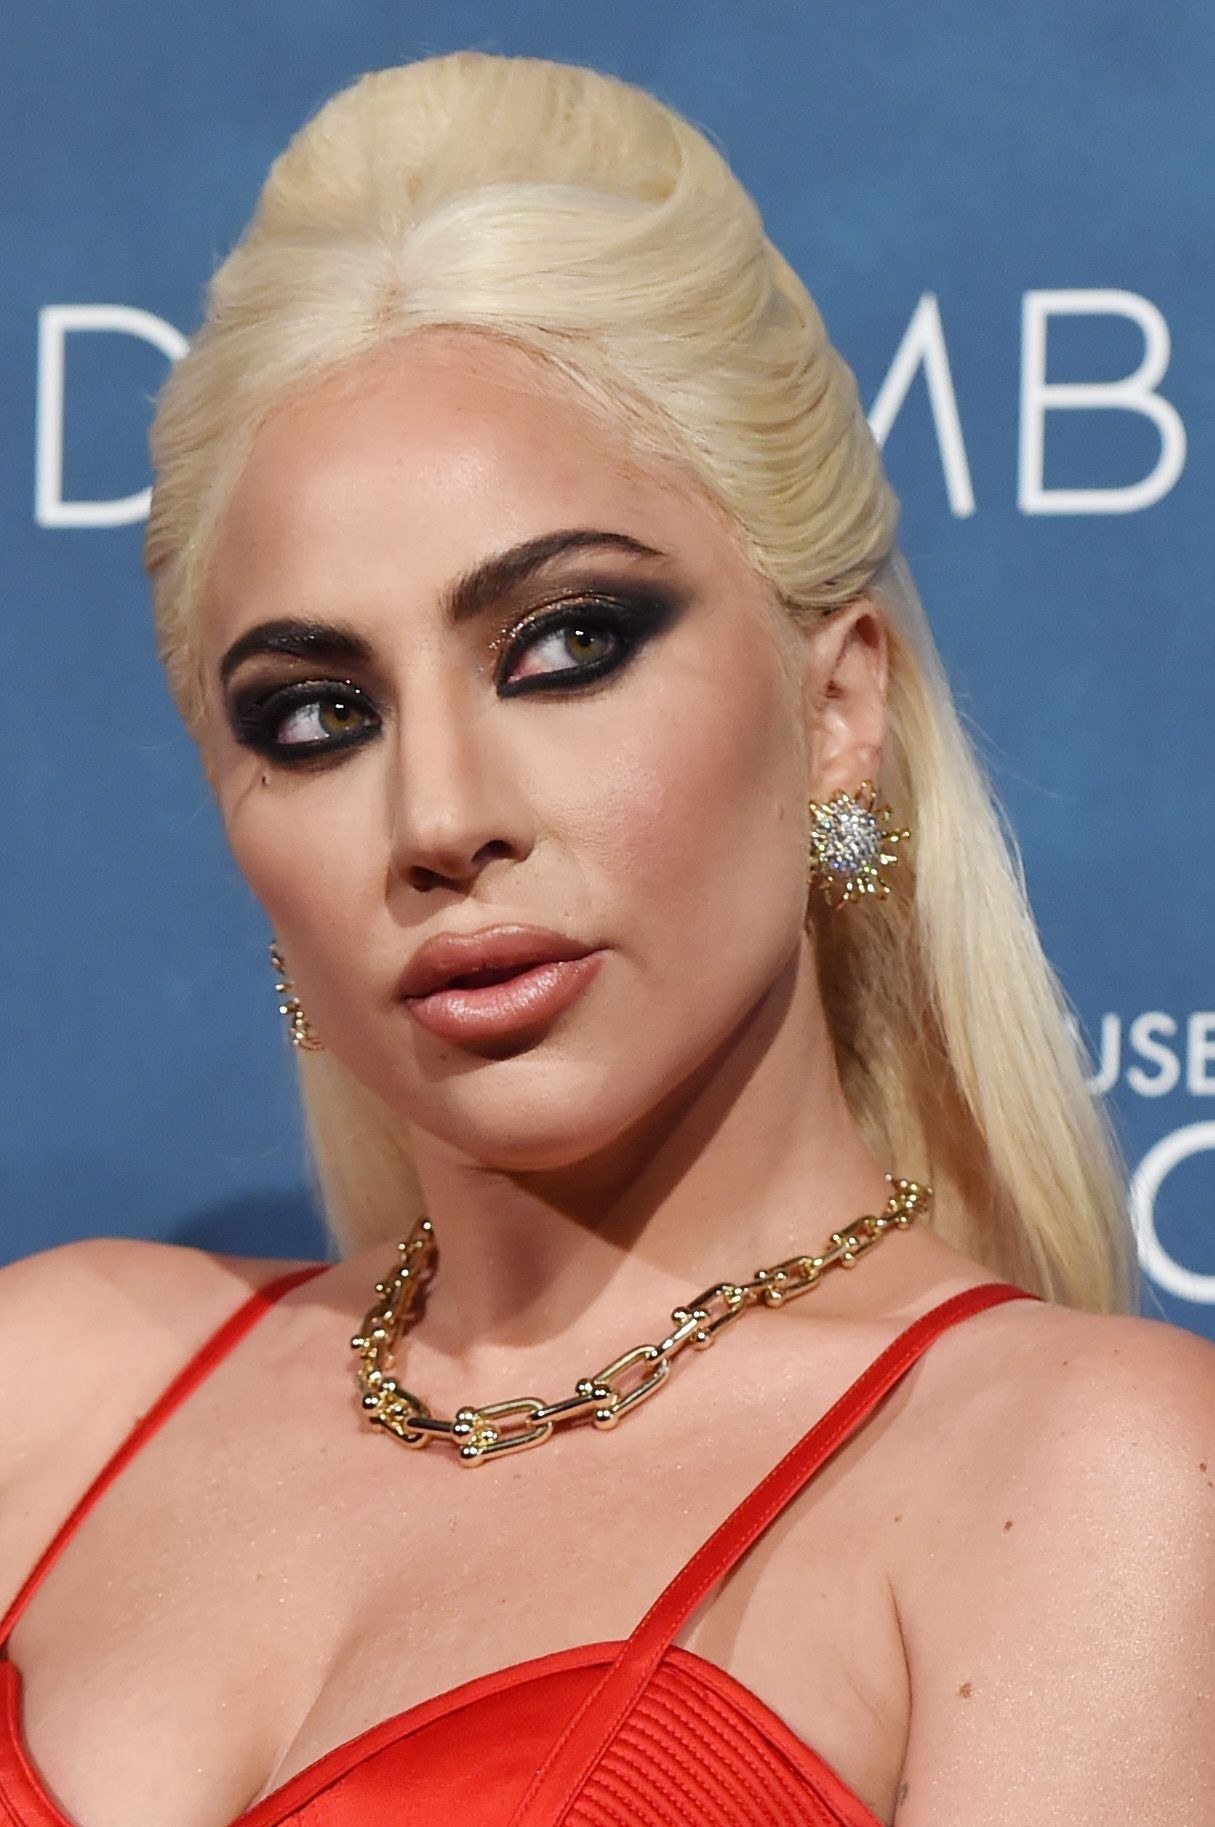 Close-up of Gaga wearing dramatic eye makeup